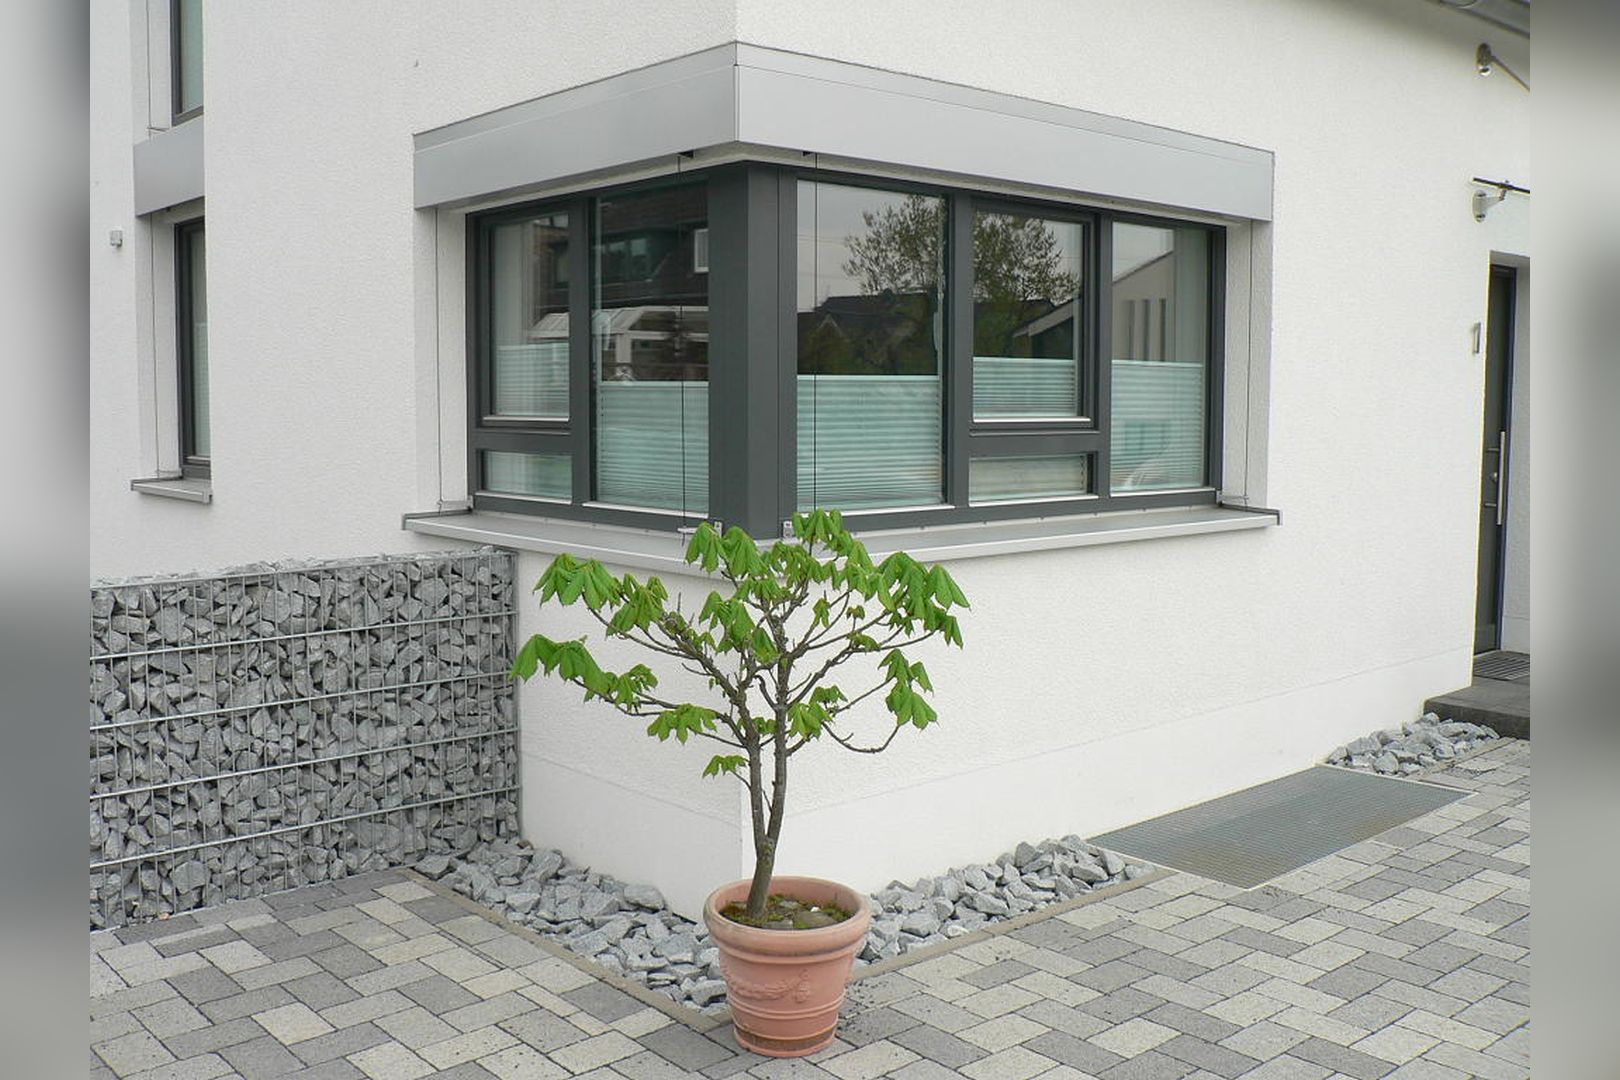 Immobilie Nr.BÖ-05 - BÖ-05;  Wohneinheit in Reihe als Endhaus mit direktem TG-Zugang - Bild 10.jpg